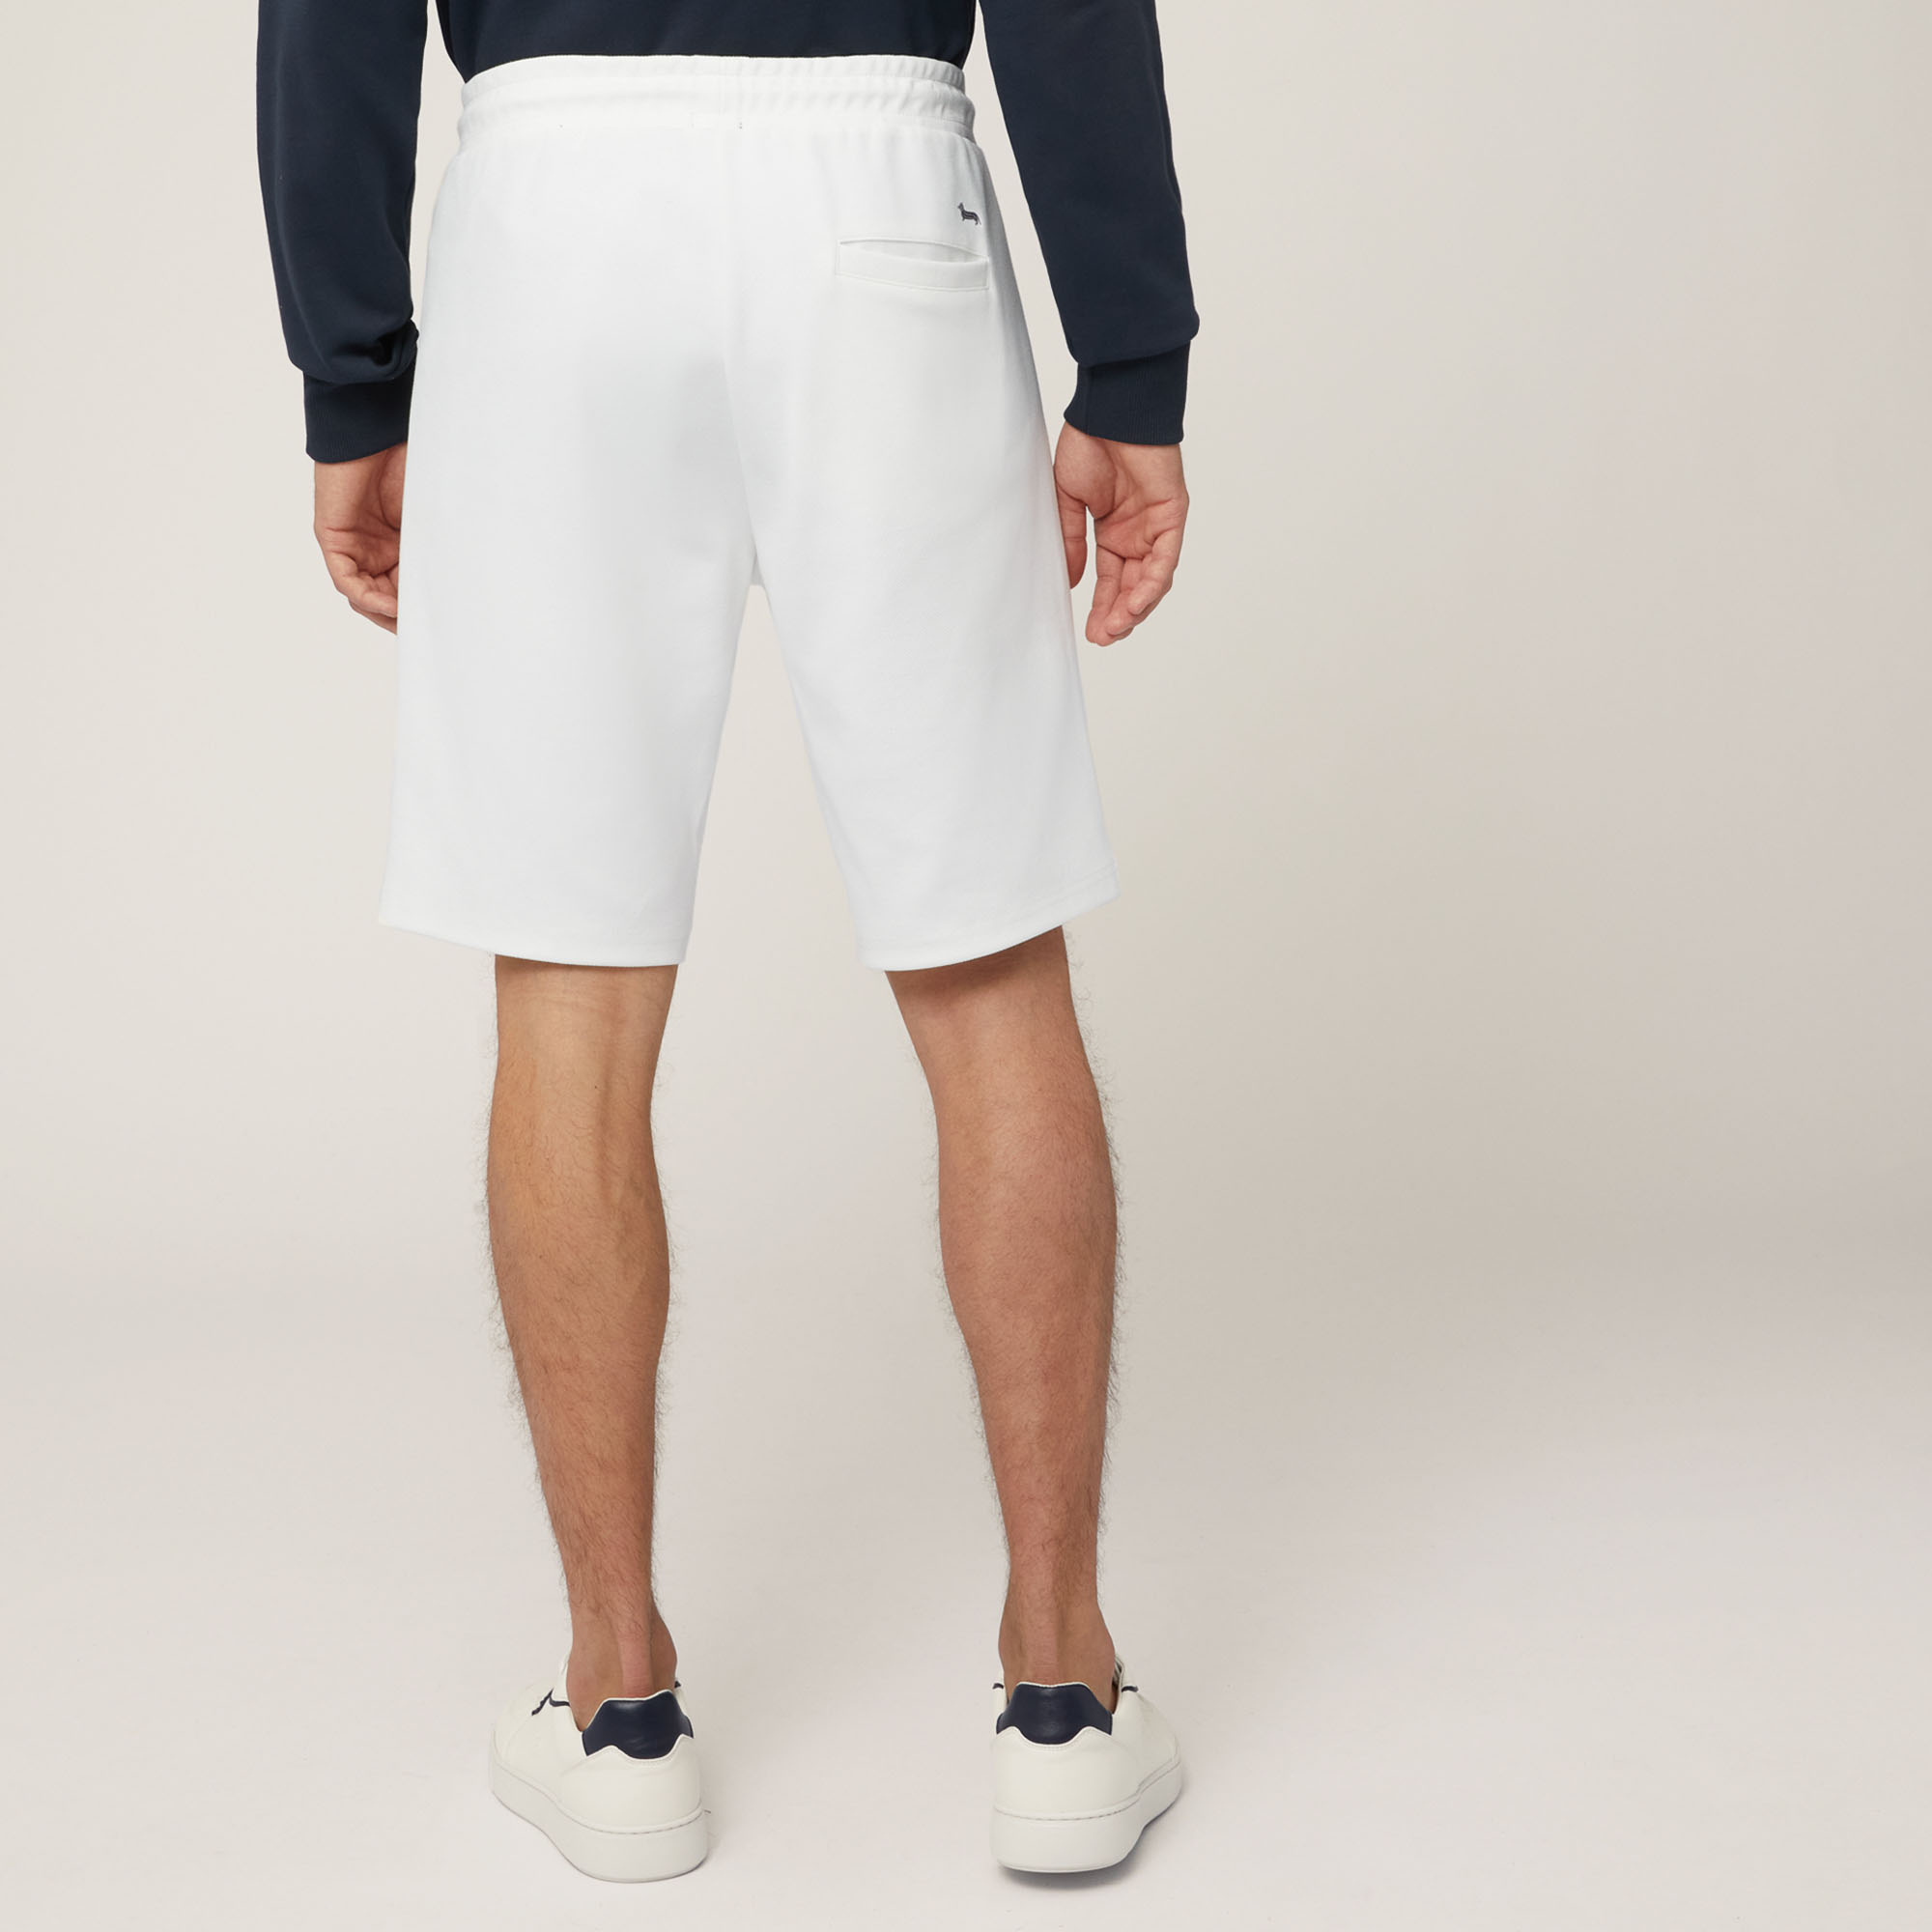 Shorts aus Stretch-Baumwolle mit Tasche hinten, Weiß, large image number 1